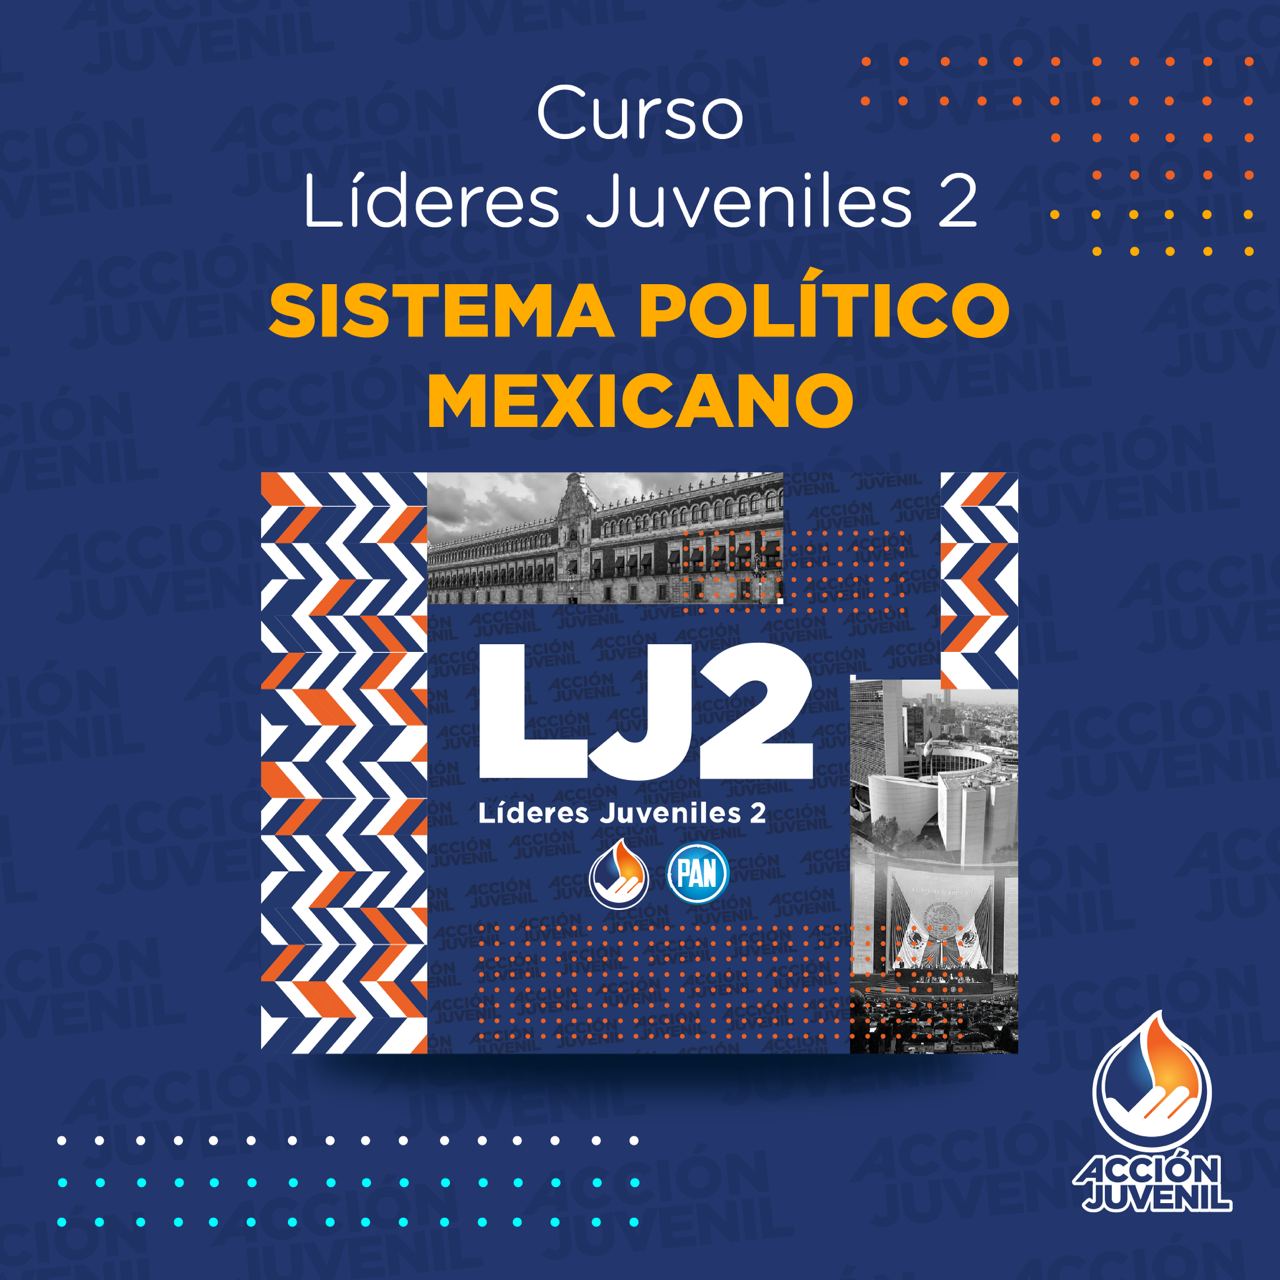 Curso Líderes Juveniles 2 Sistema Político Mexicano Meoqui, CHH 12/02/22